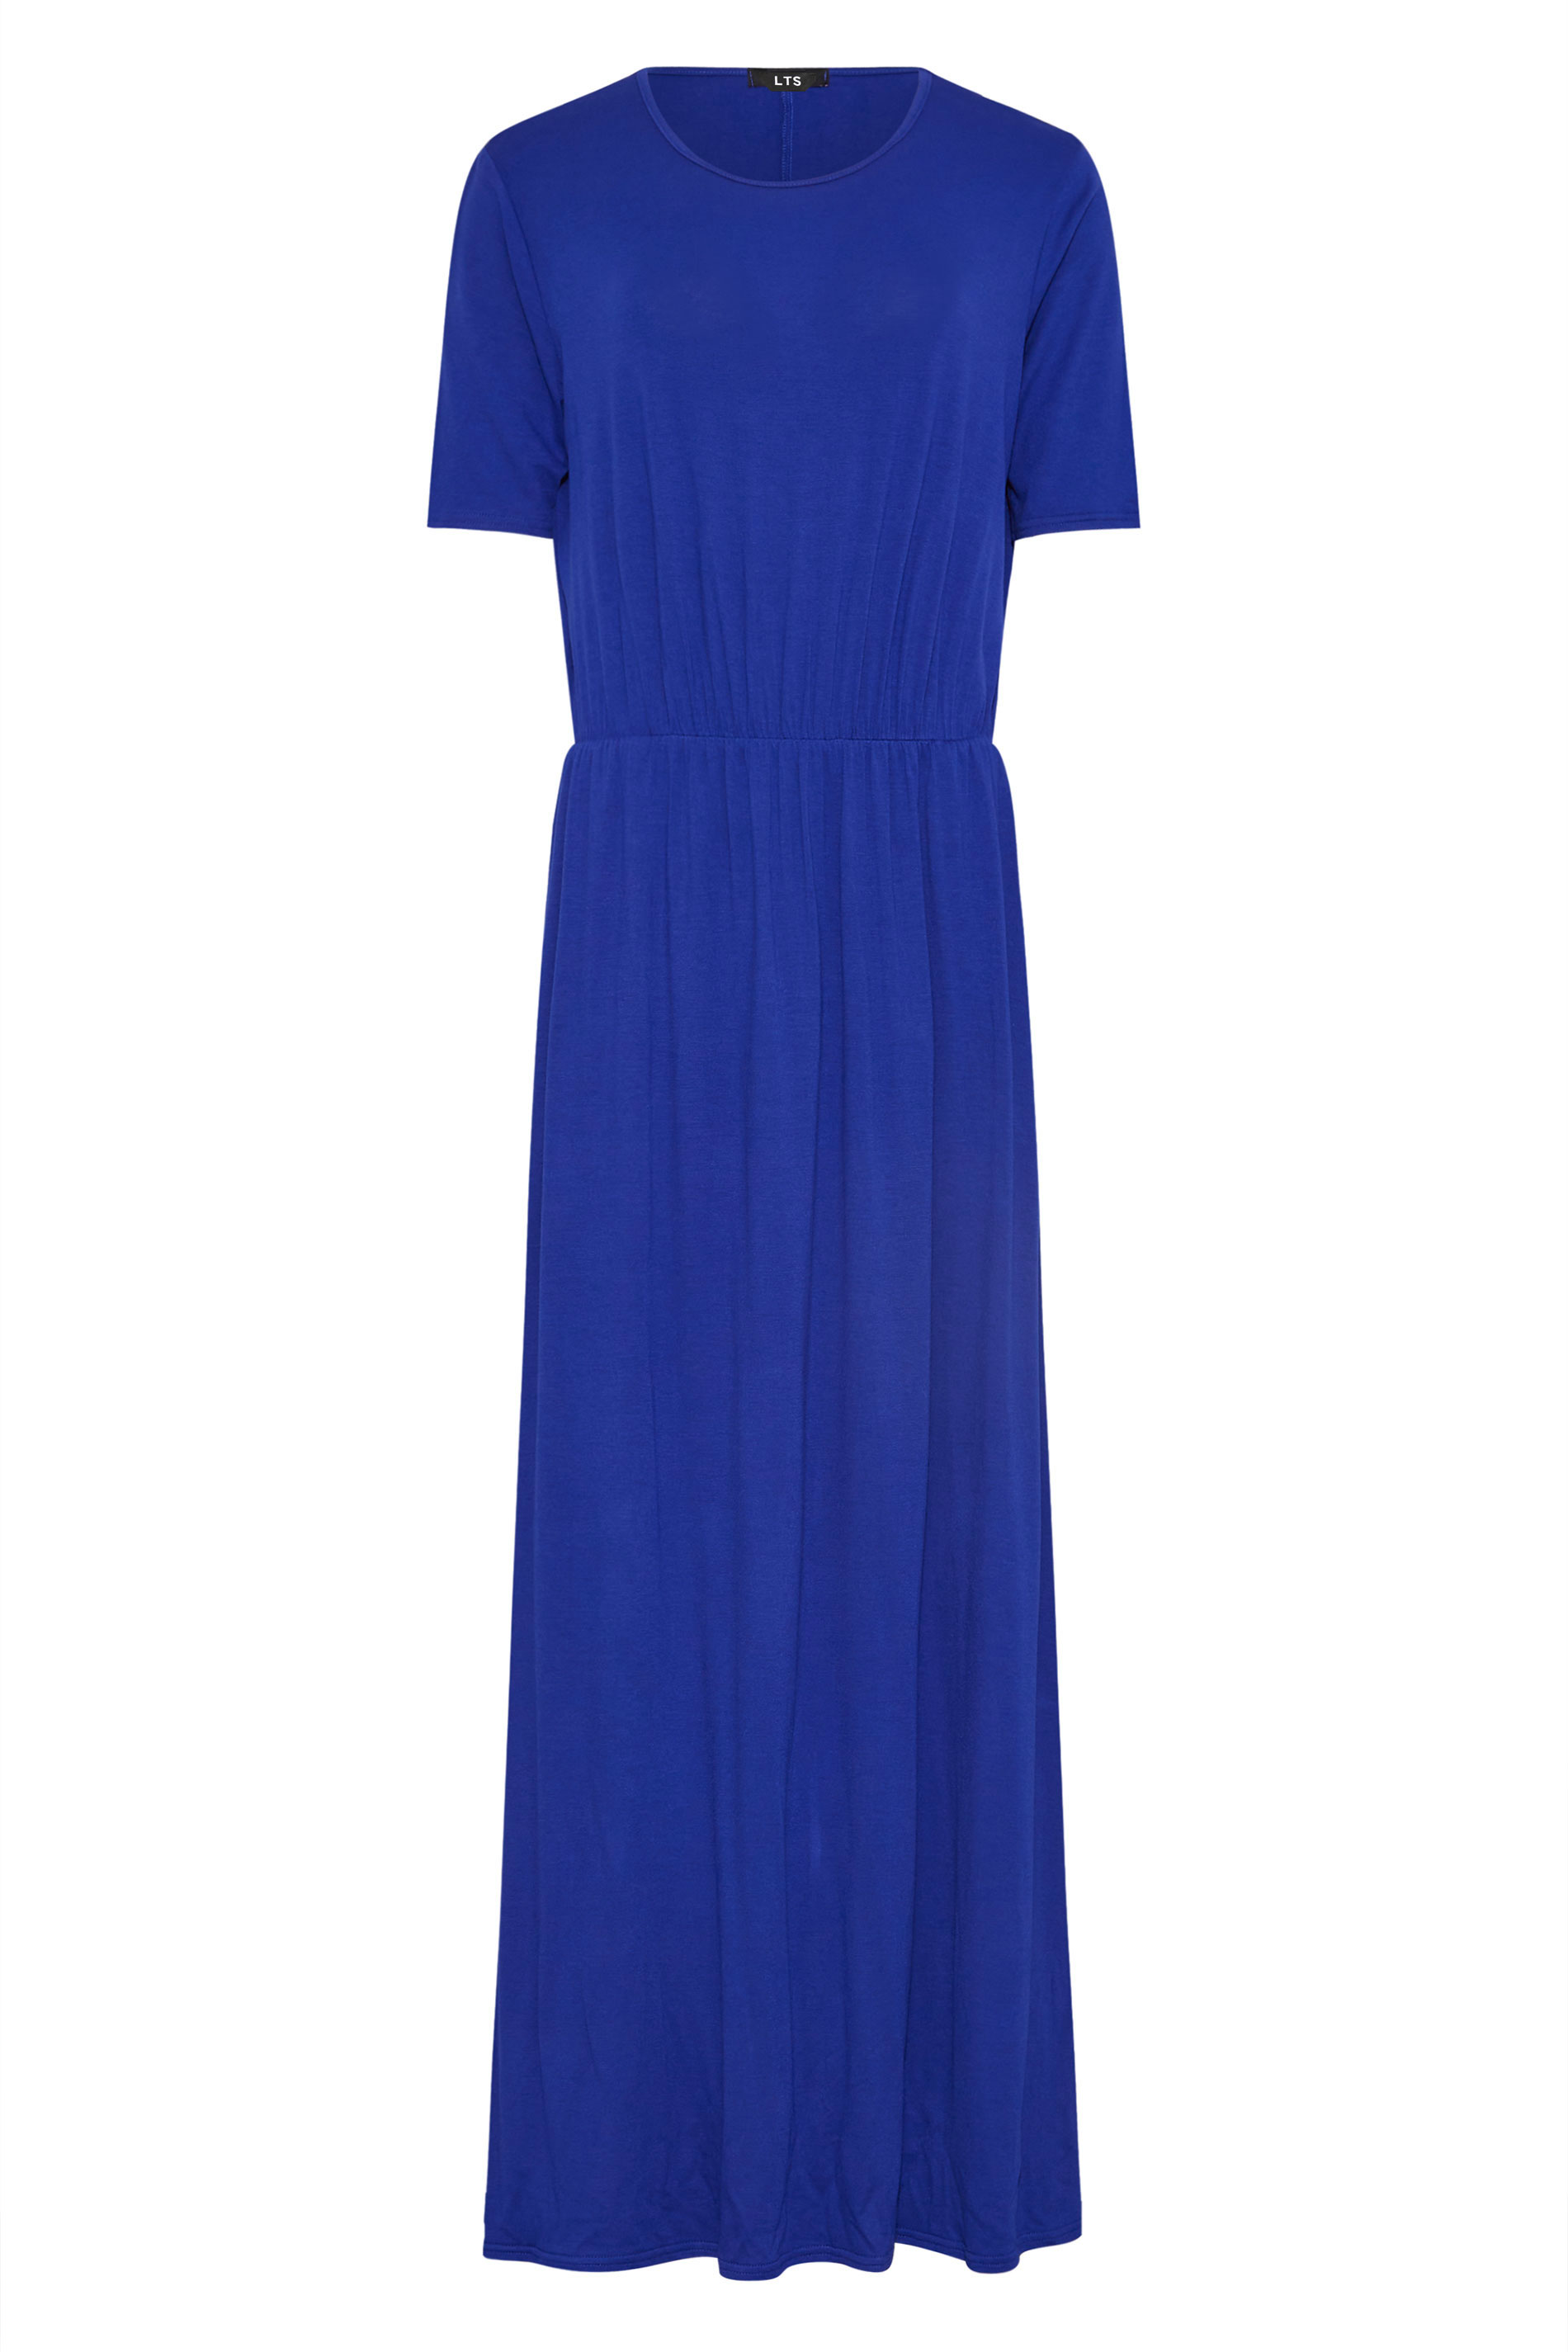 LTS Tall Women's Cobalt Blue Pocket Midaxi Dress | Long Tall Sally